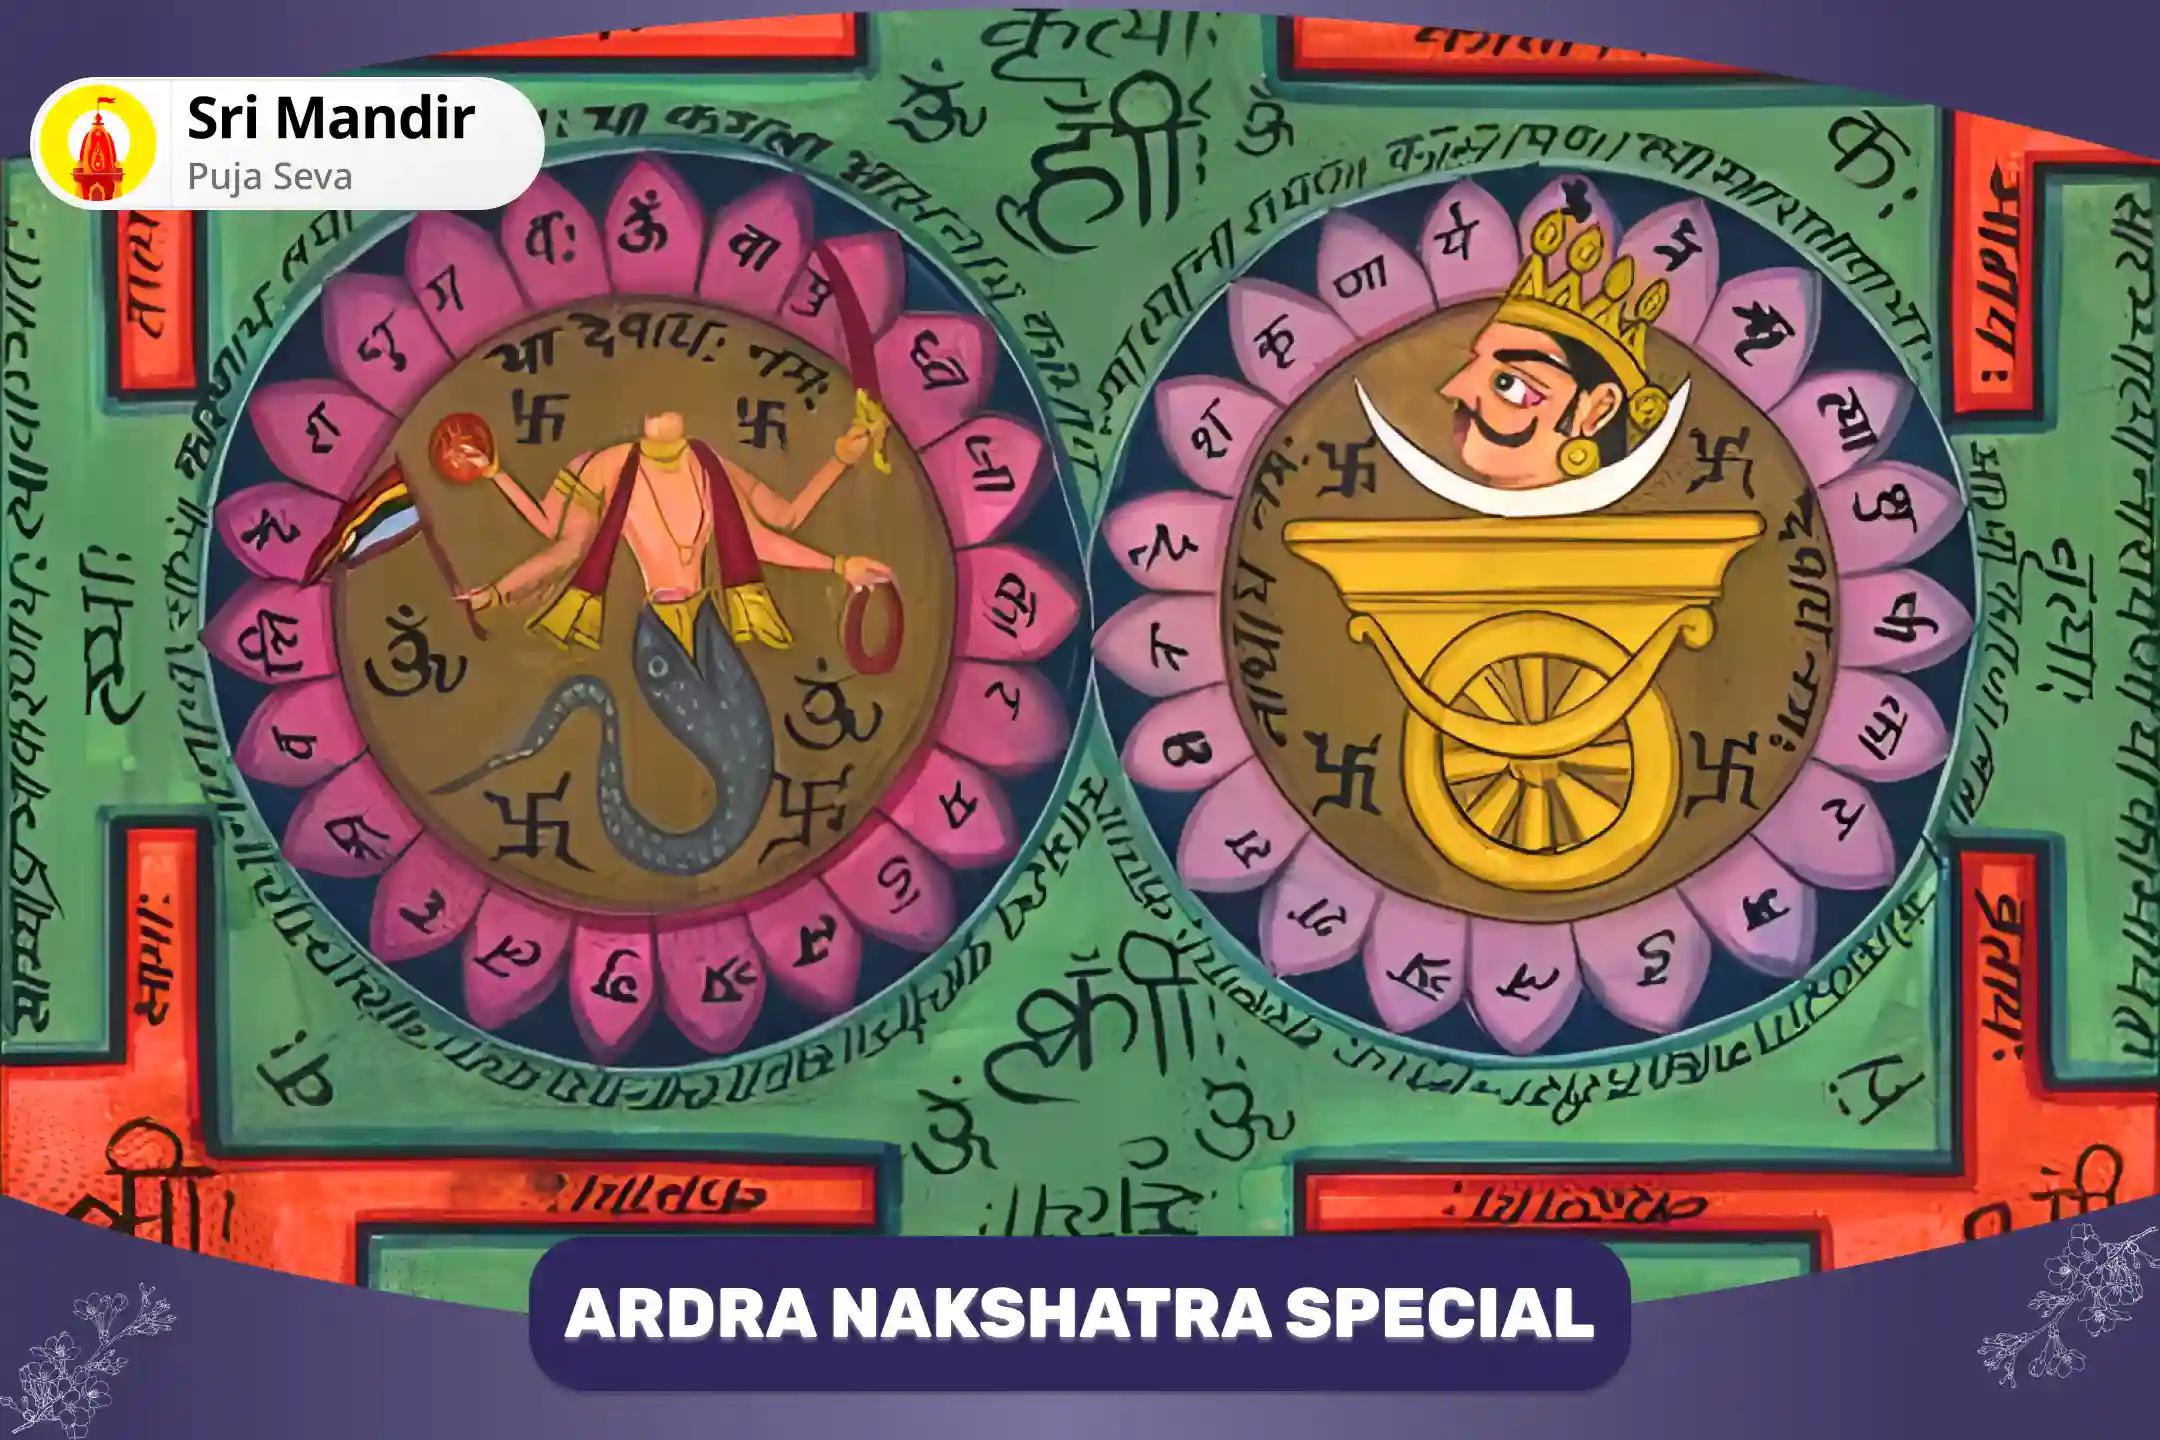 Ardra Nakshatra Special Rahu-Ketu Peeda Shanti Mahapuja and 108 Pashupatinath Shiv Dudh (Milk) Abhishek